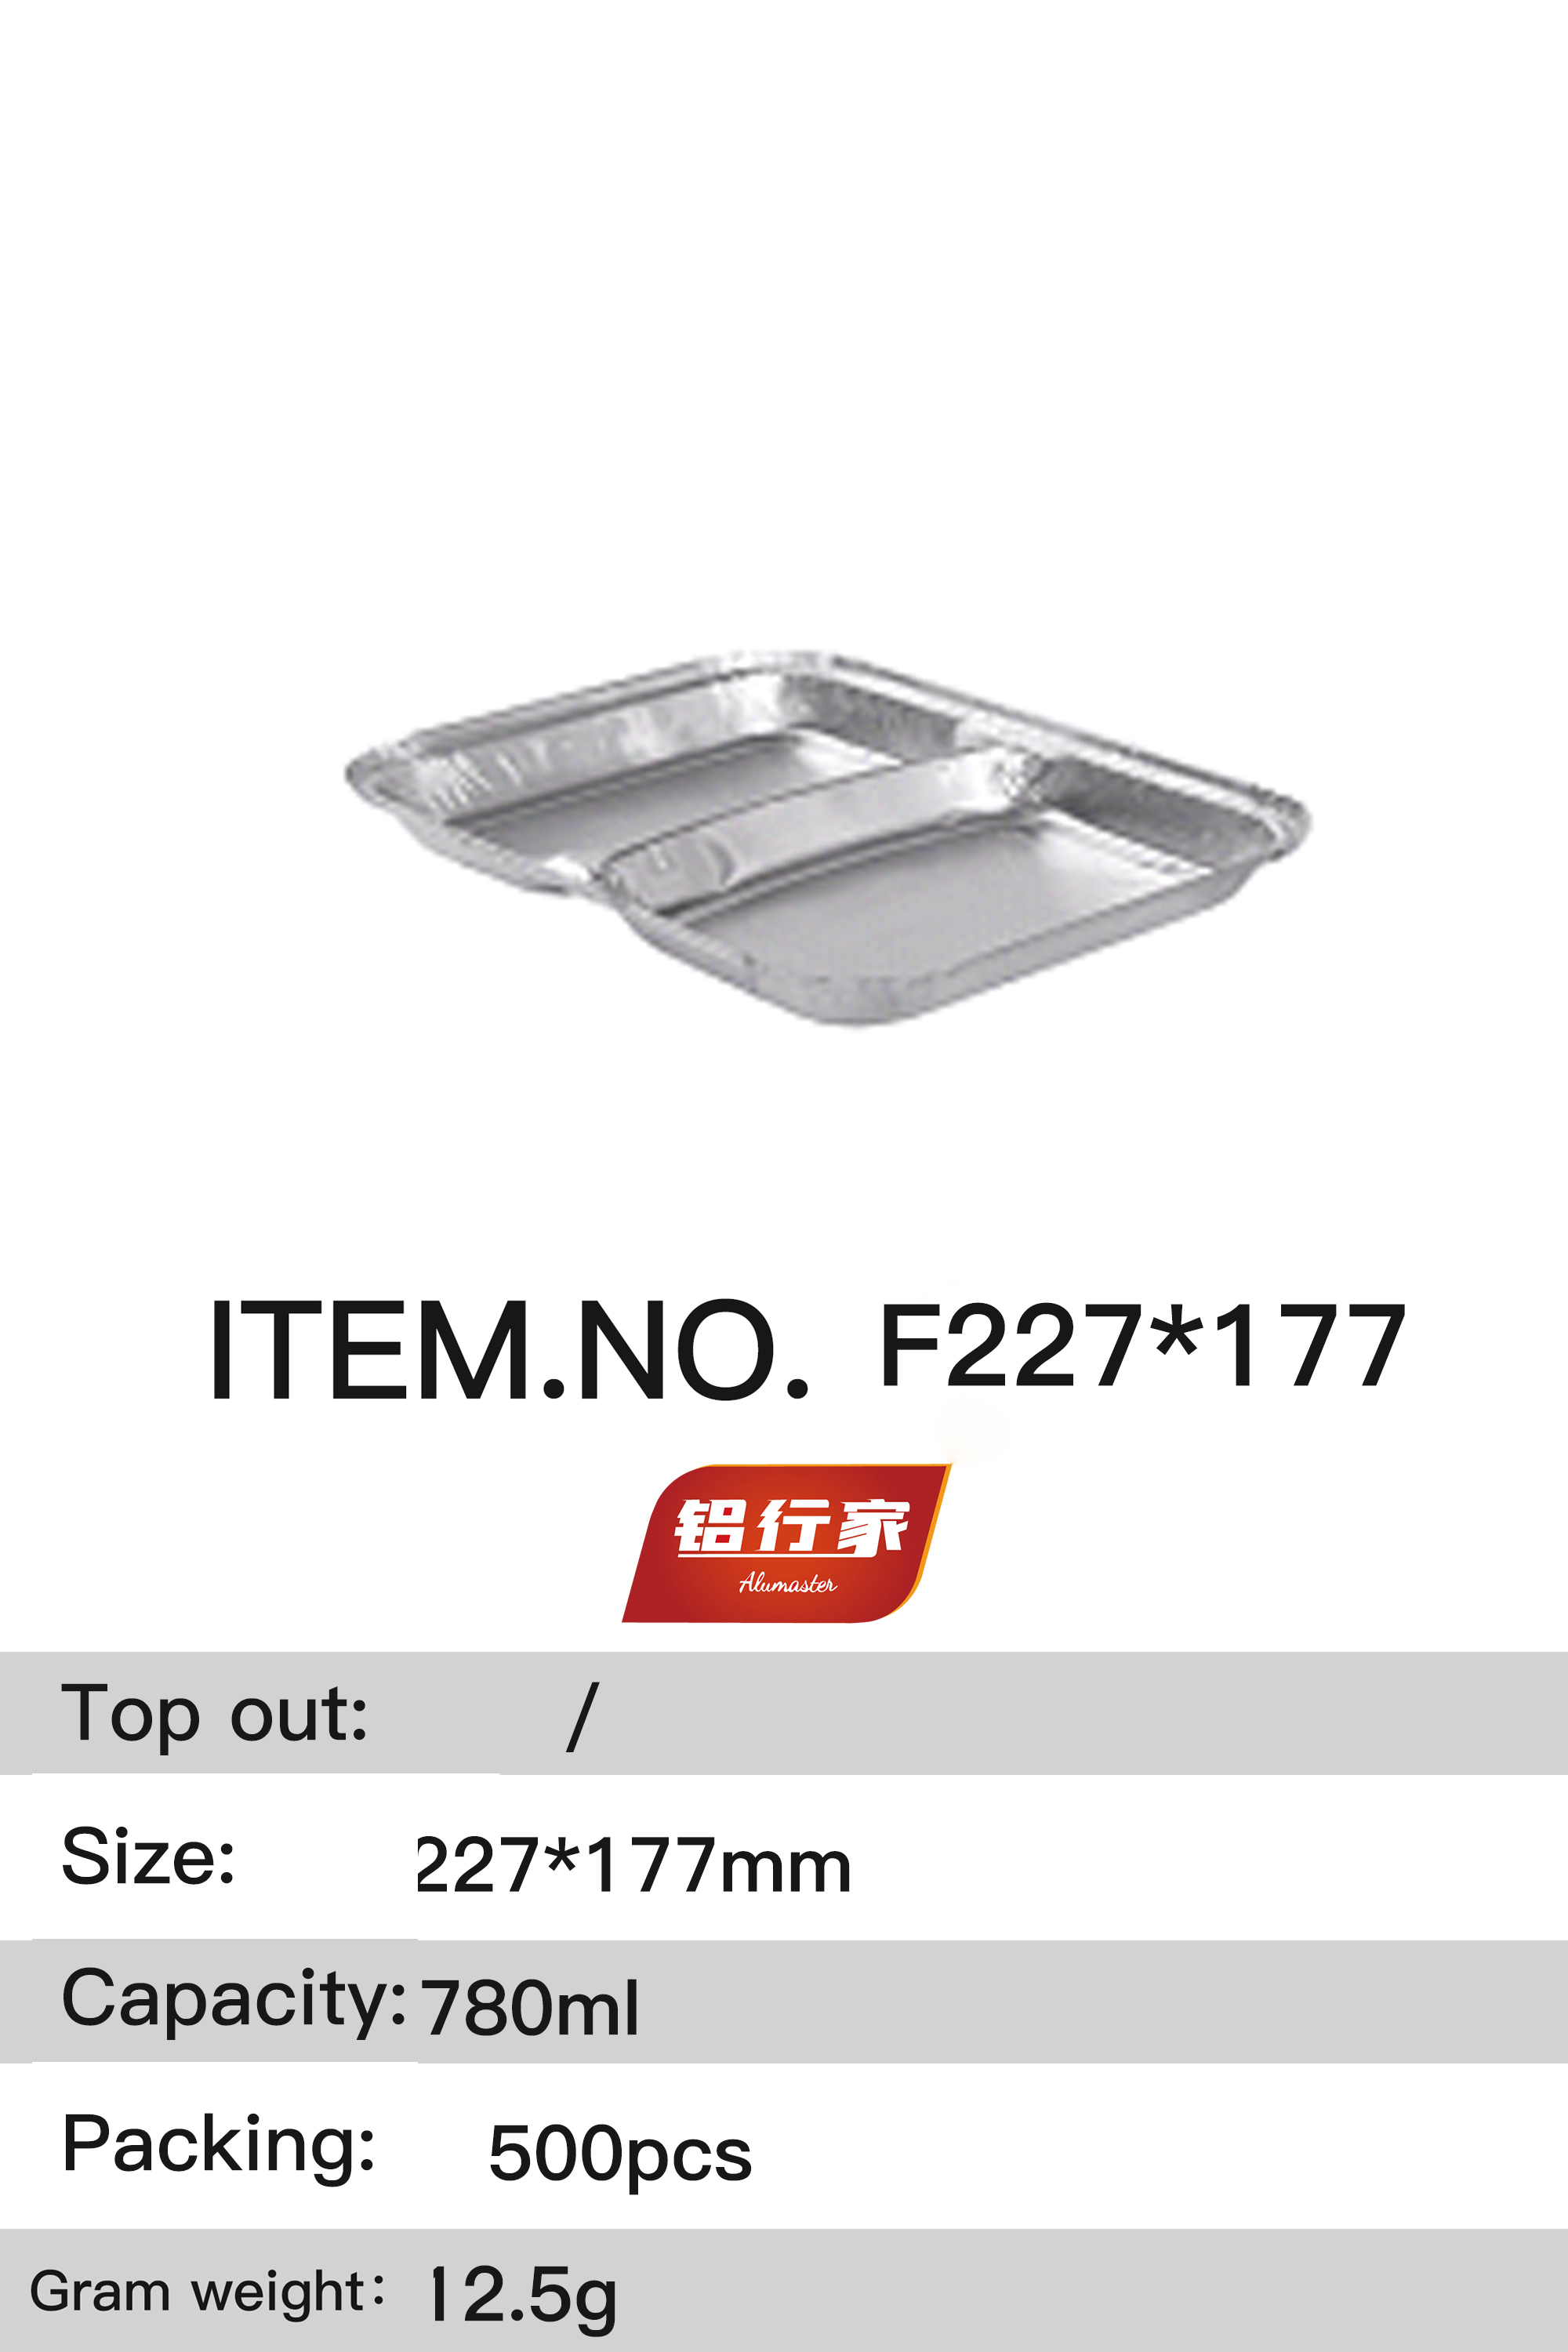 铝行家铝箔餐盒F227*177